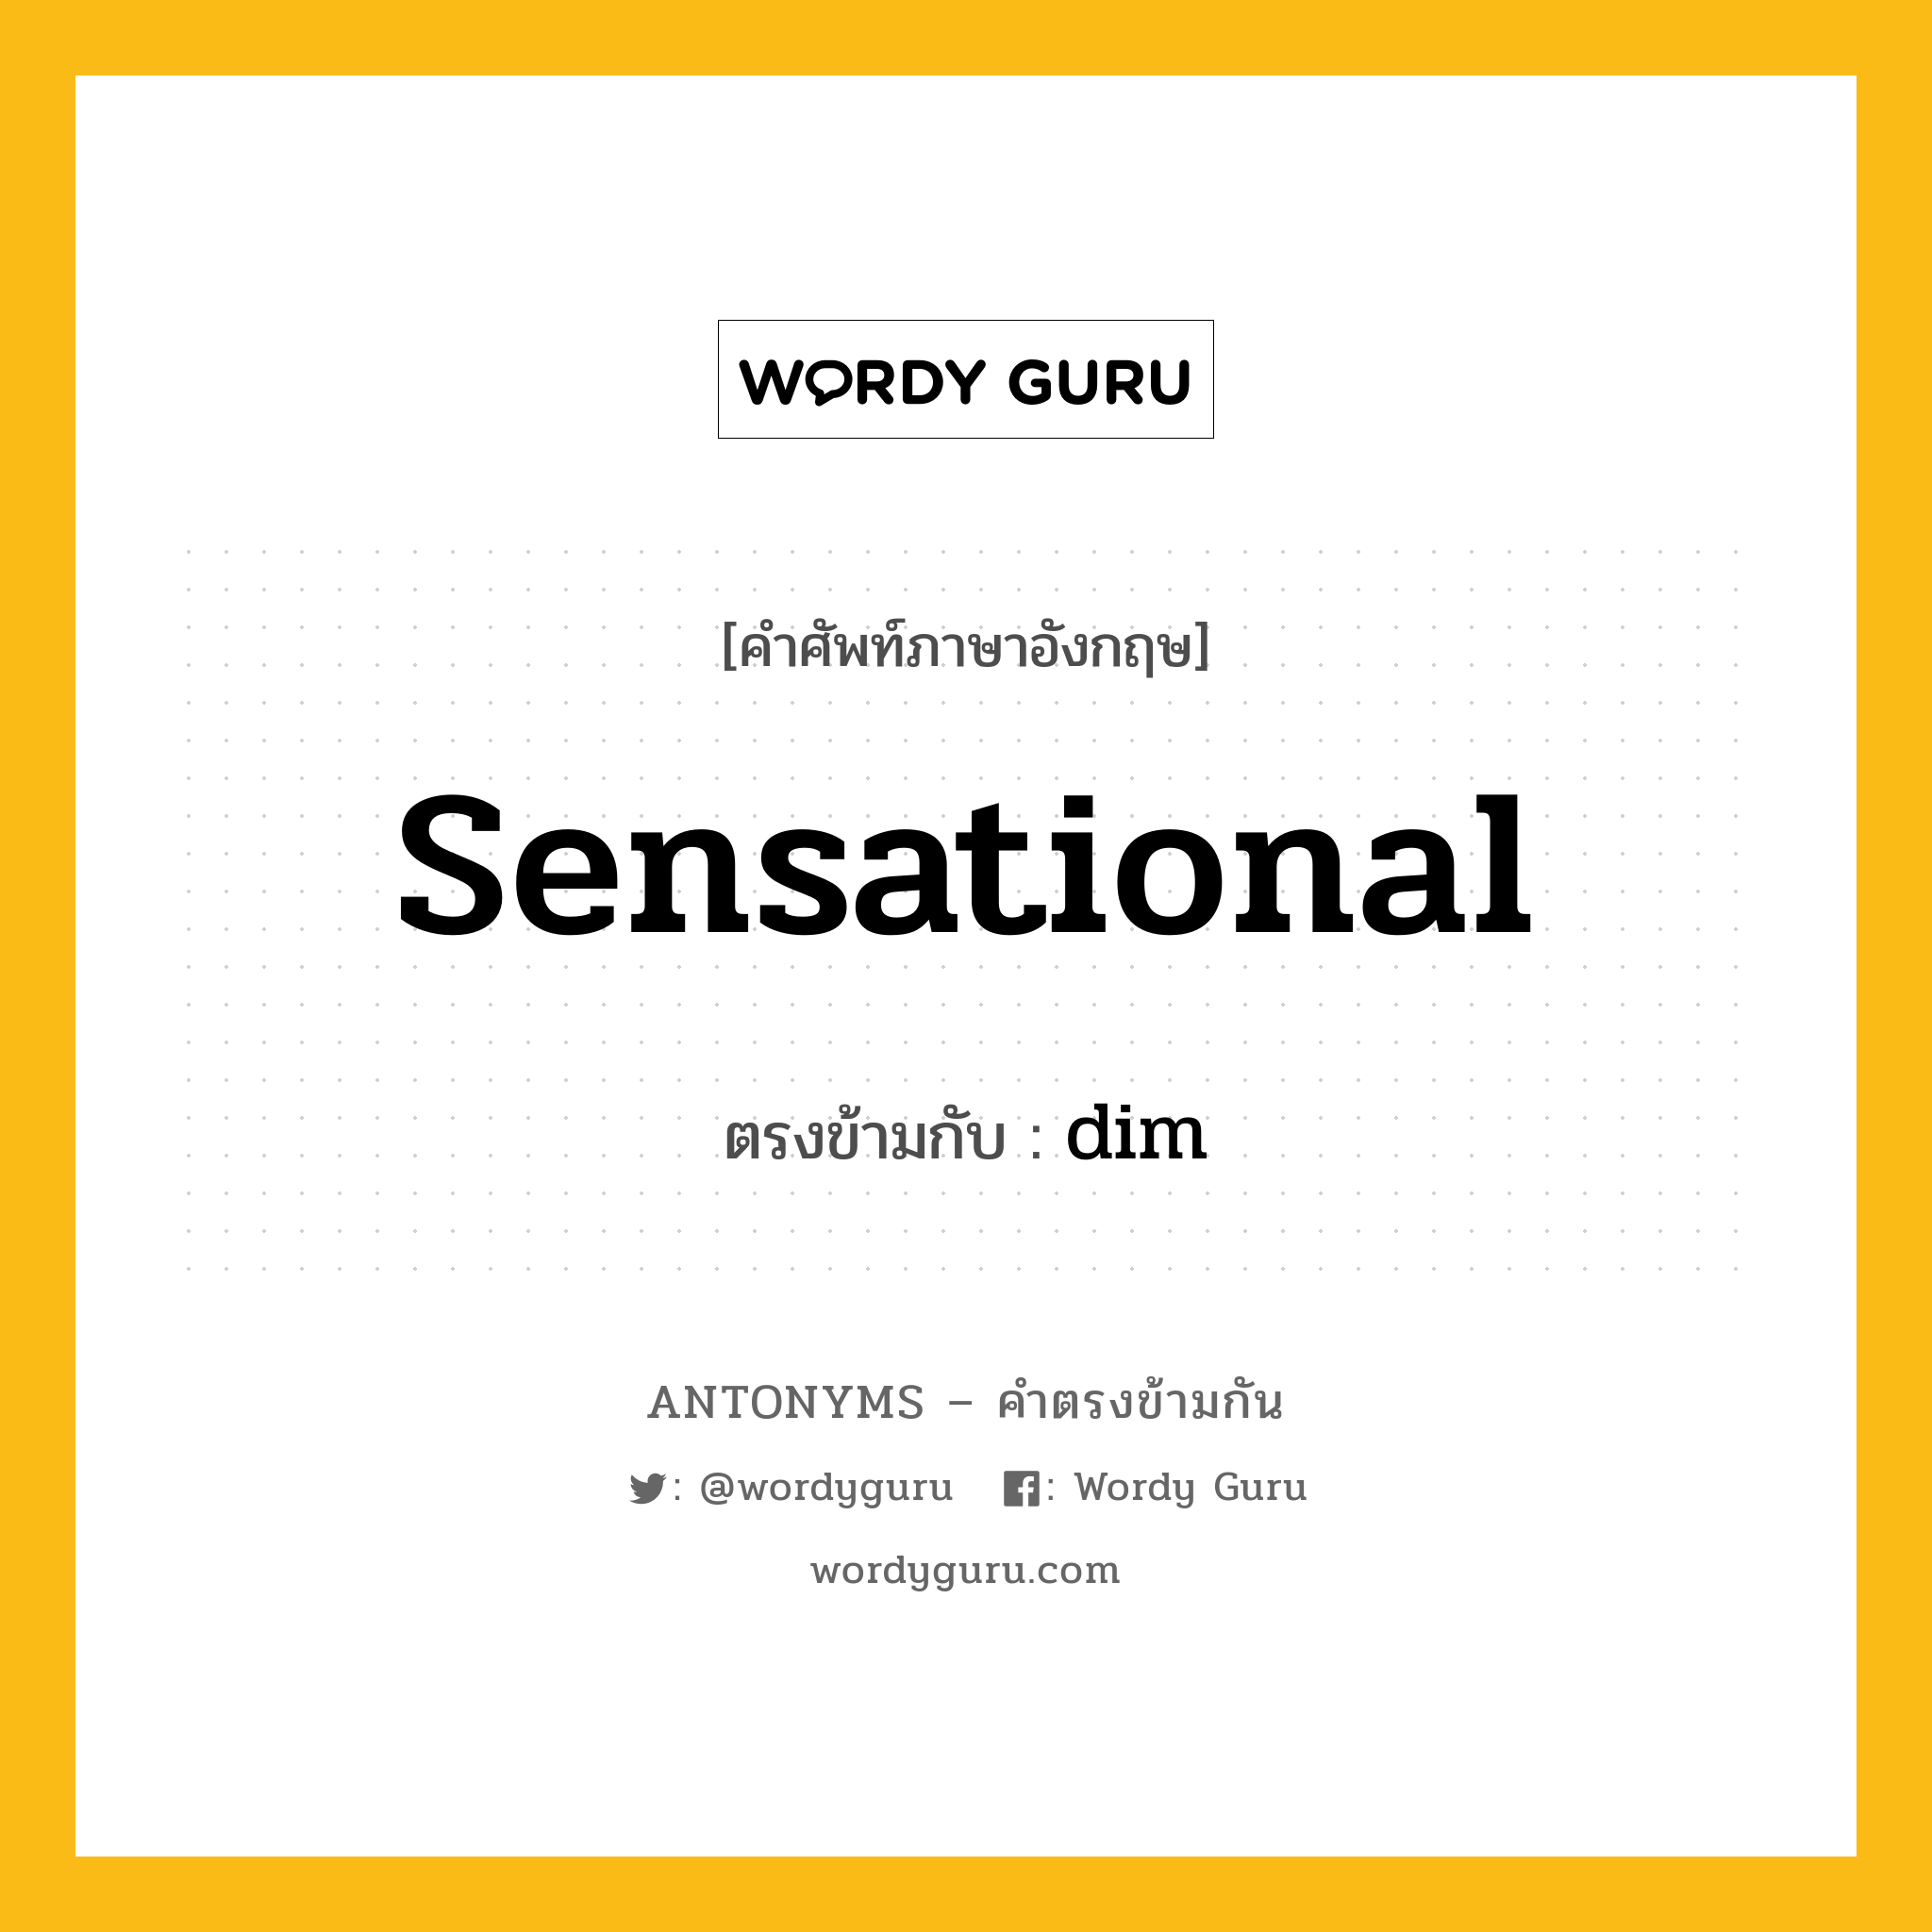 sensational เป็นคำตรงข้ามกับคำไหนบ้าง?, คำศัพท์ภาษาอังกฤษ sensational ตรงข้ามกับ dim หมวด dim